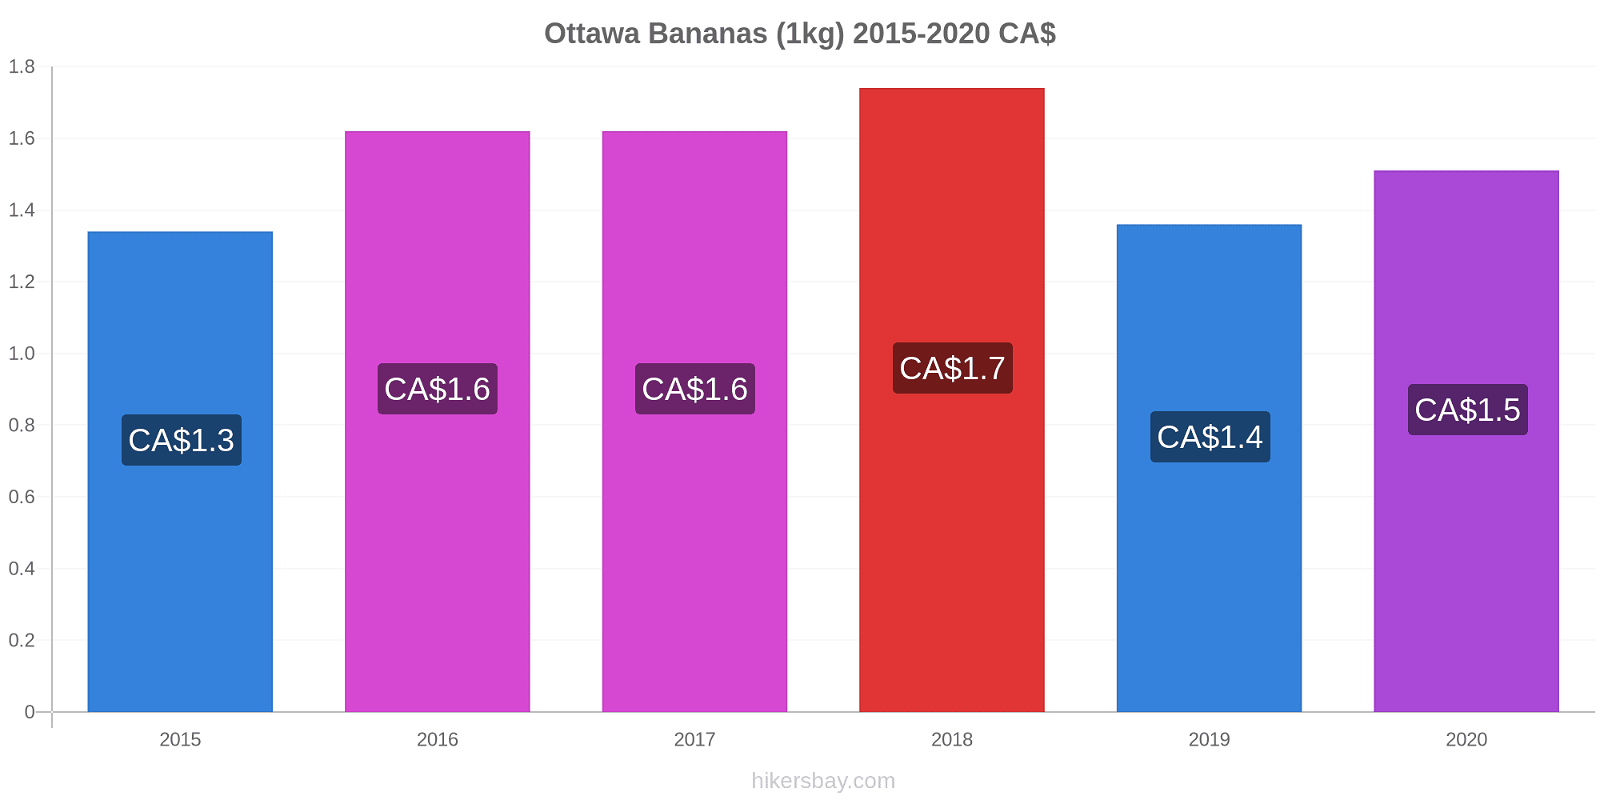 Ottawa variação de preço Banana (1kg) hikersbay.com